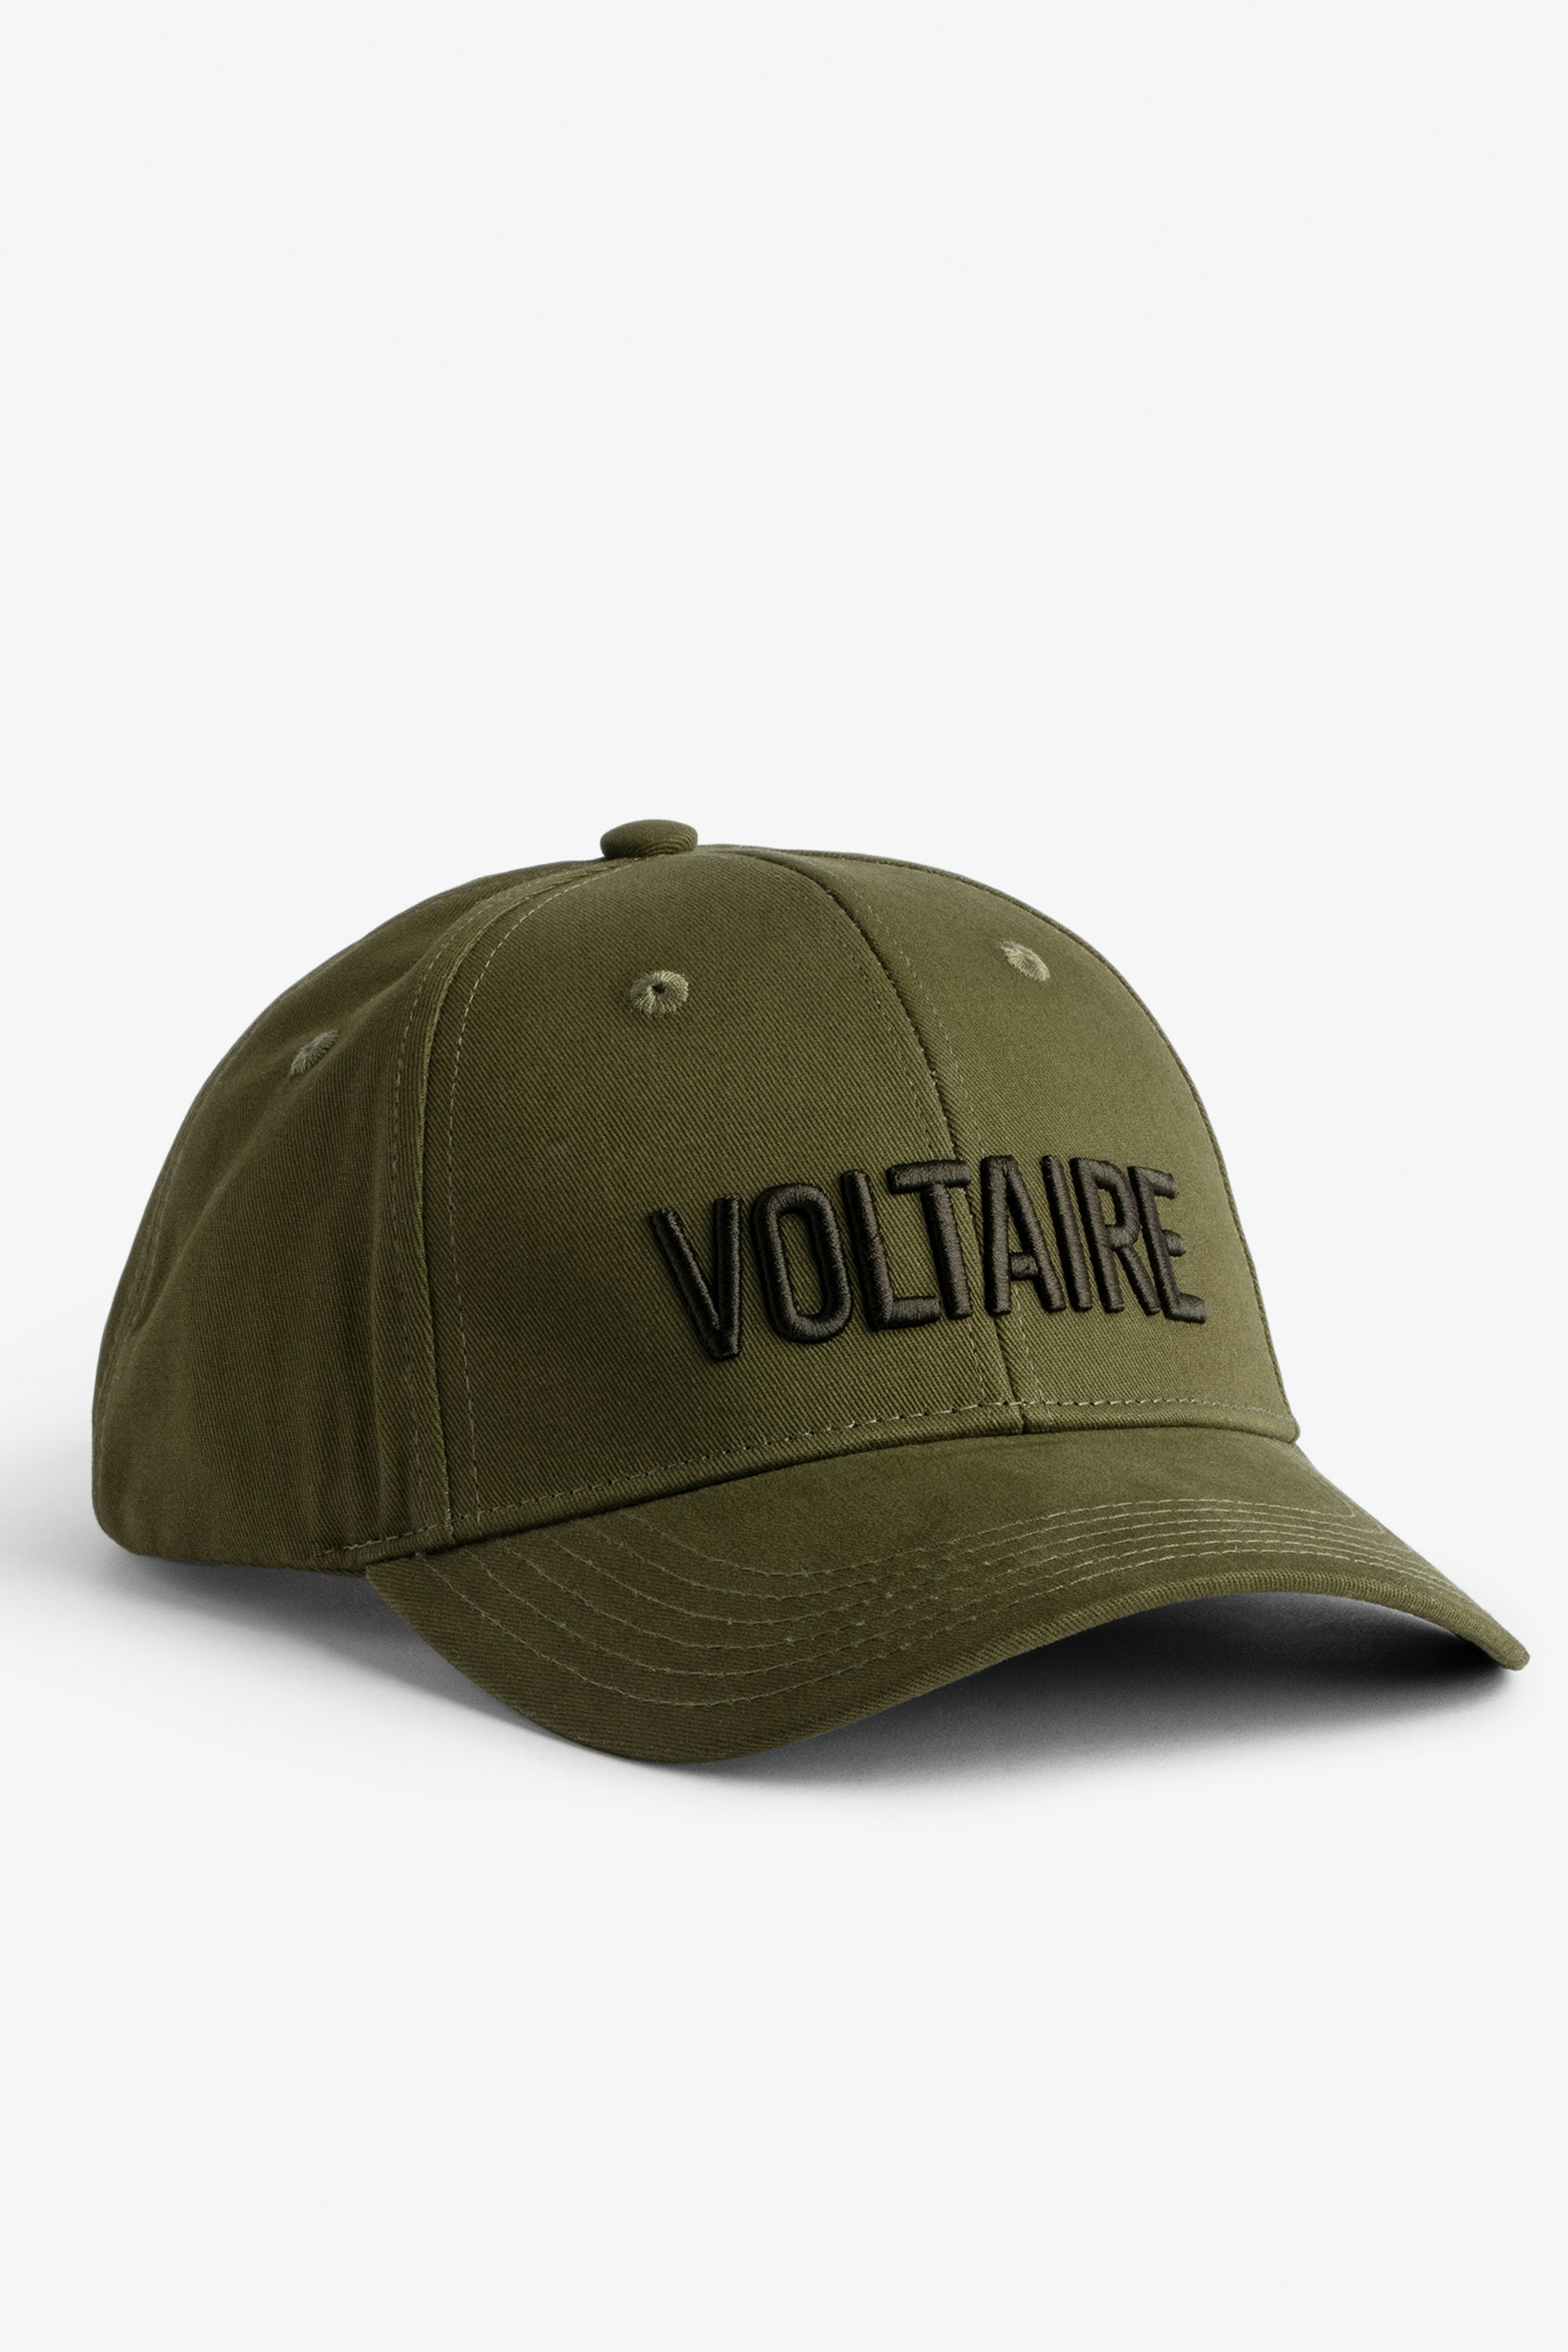 Klelia Voltaire Cap Men's khaki cotton cap embroidered “Voltaire”